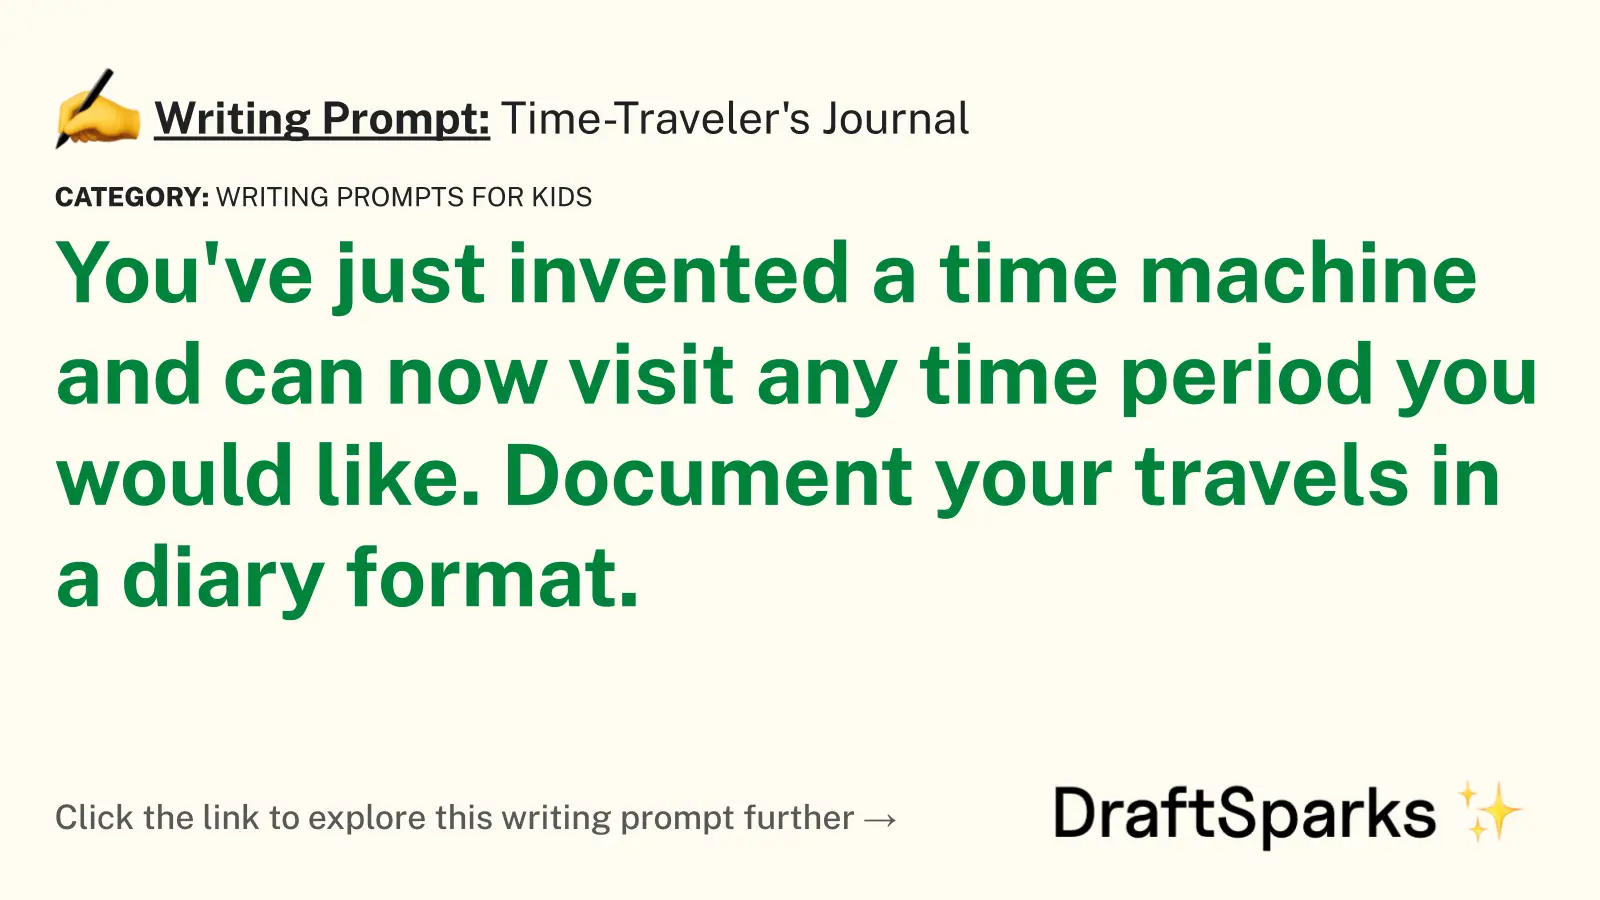 Time-Traveler’s Journal